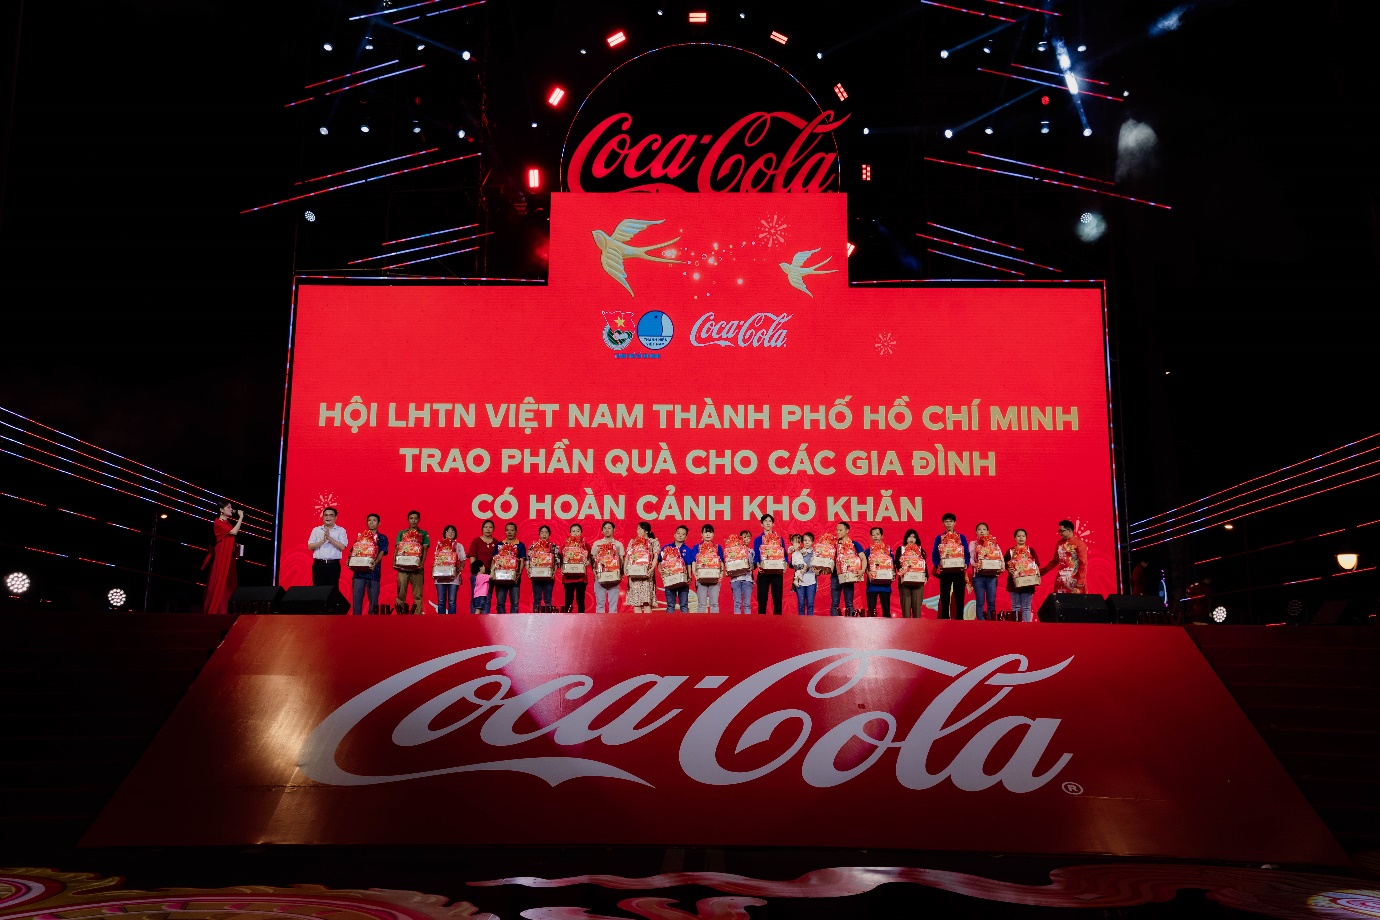 Coca-Cola sum họp 1.000 gia đình Việt đón Tết và gửi ngàn lời chúc vì một Việt Nam thịnh vượng - Ảnh 4.